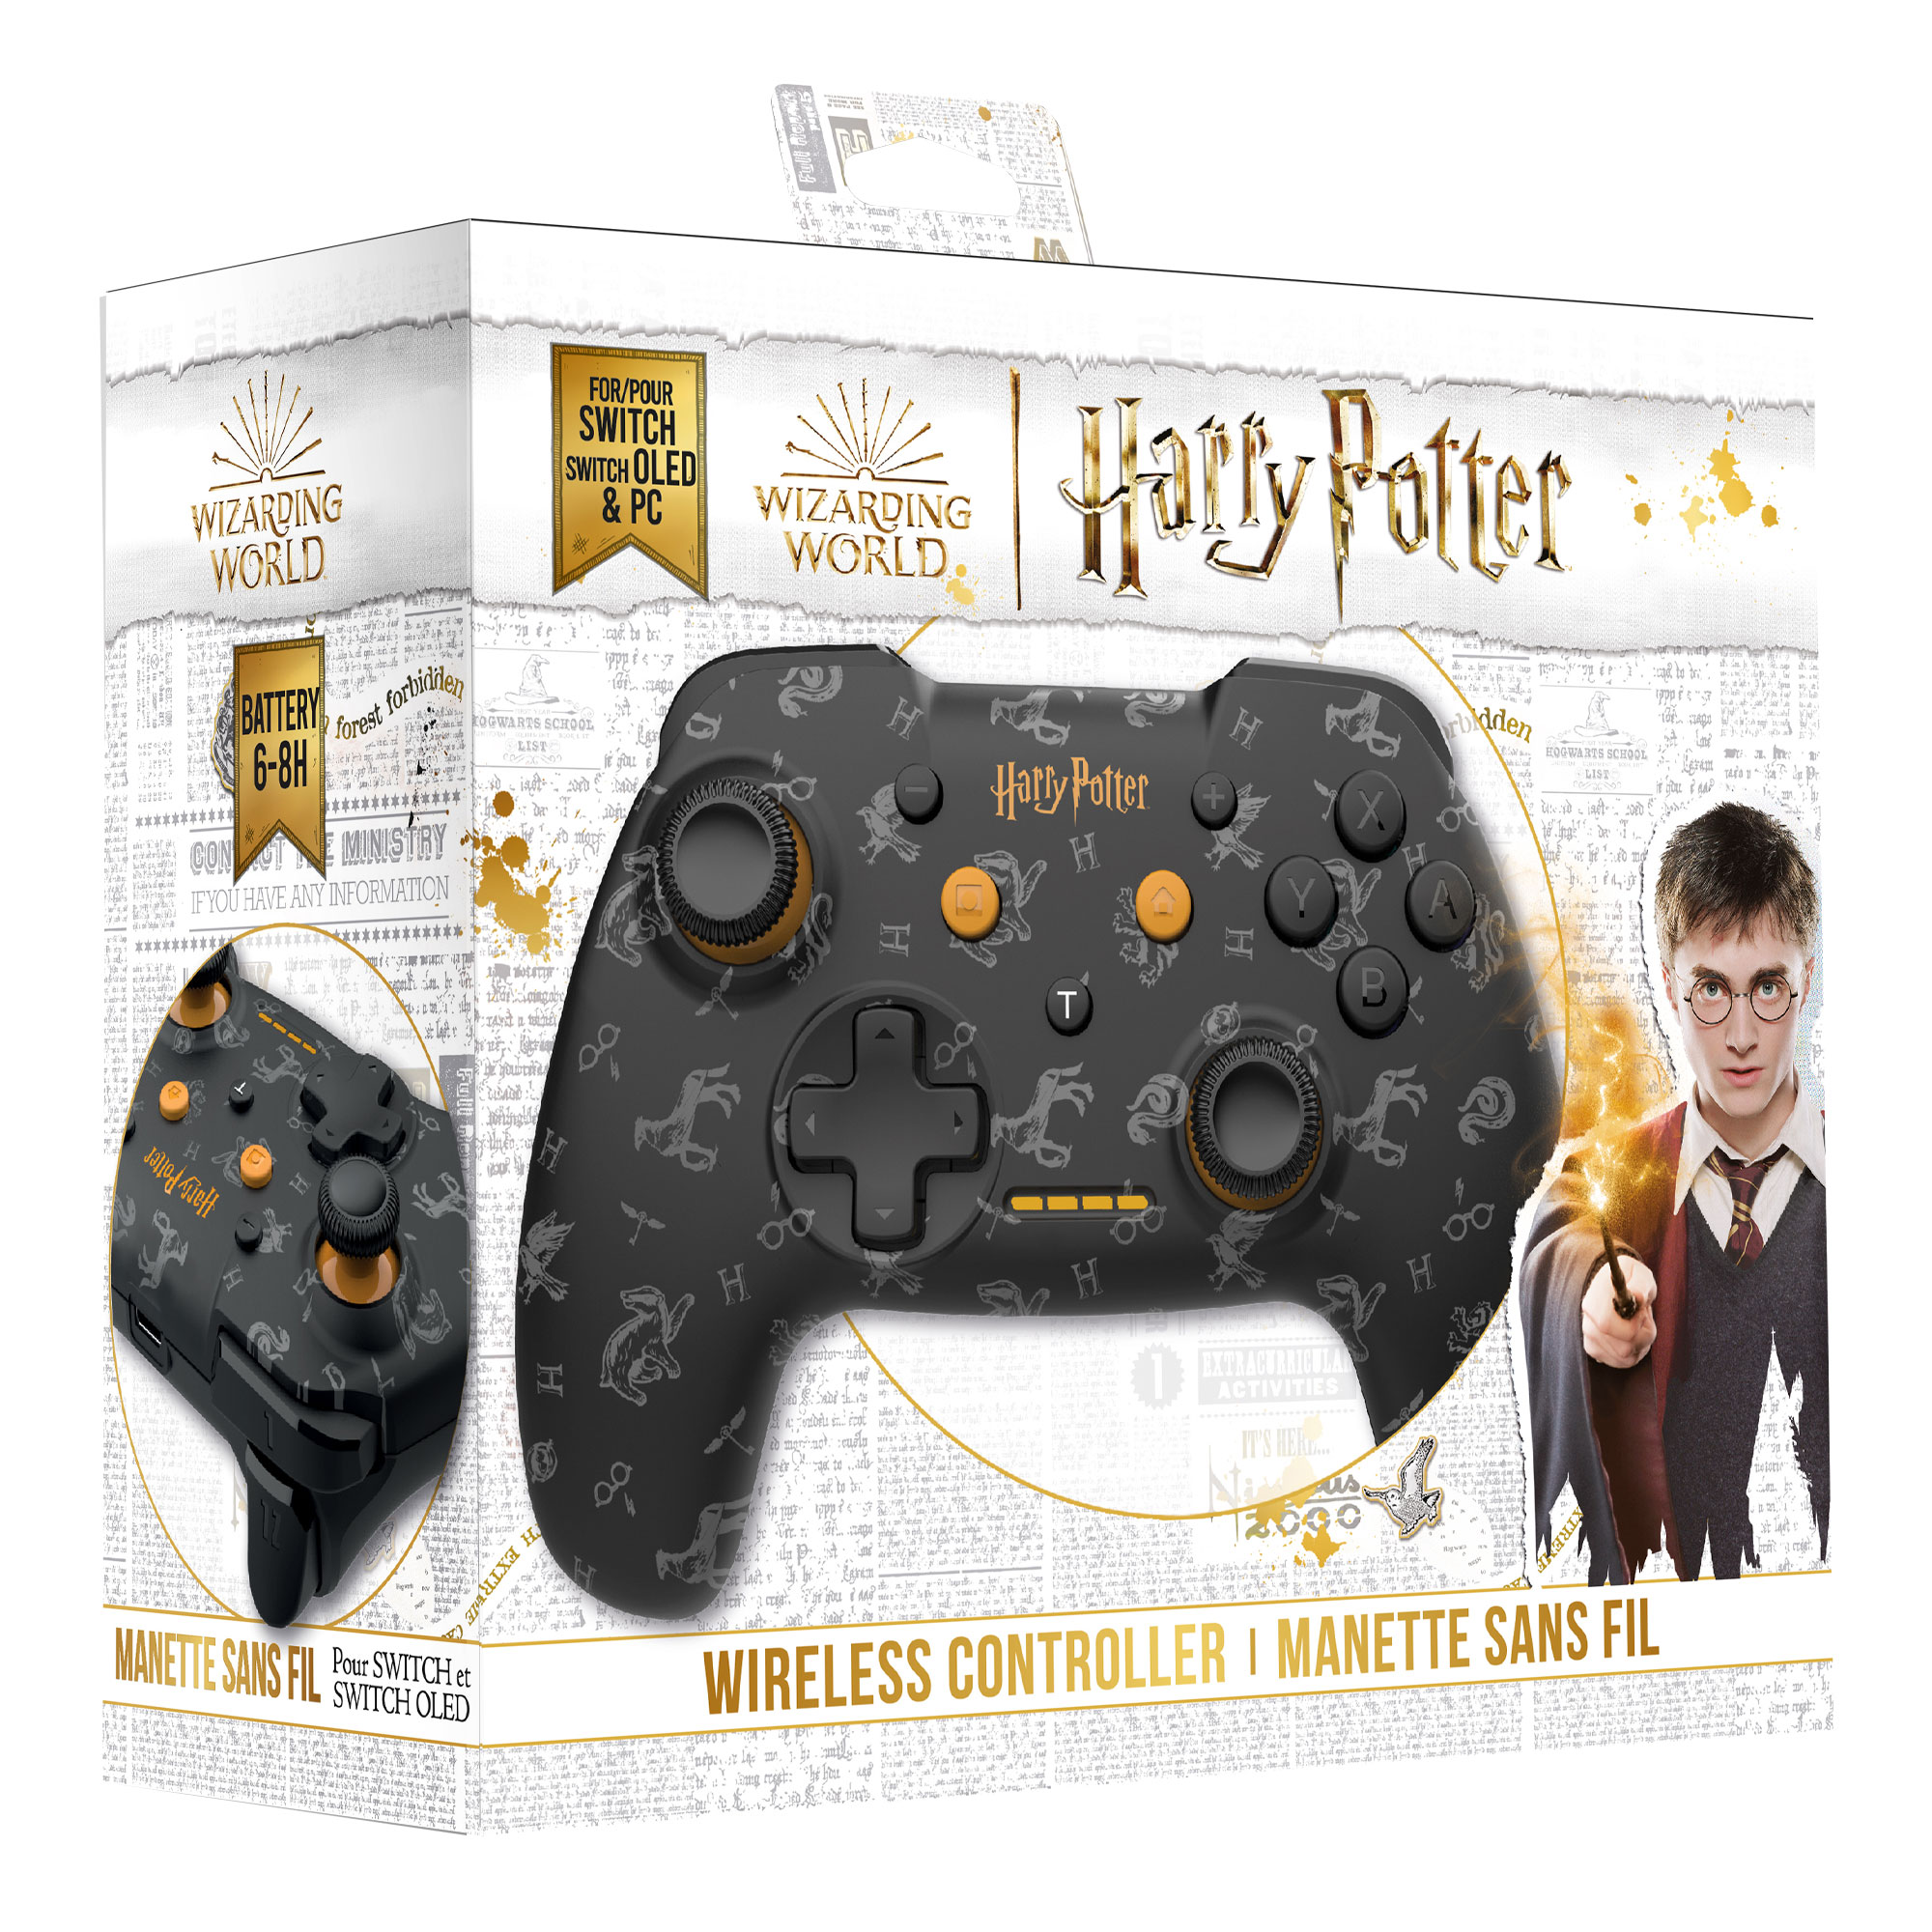 Découvrez les nouvelles manettes Switch et PS4, version Harry Potter ! - La  Plume de Poudlard - Le média d'actualité Harry Potter